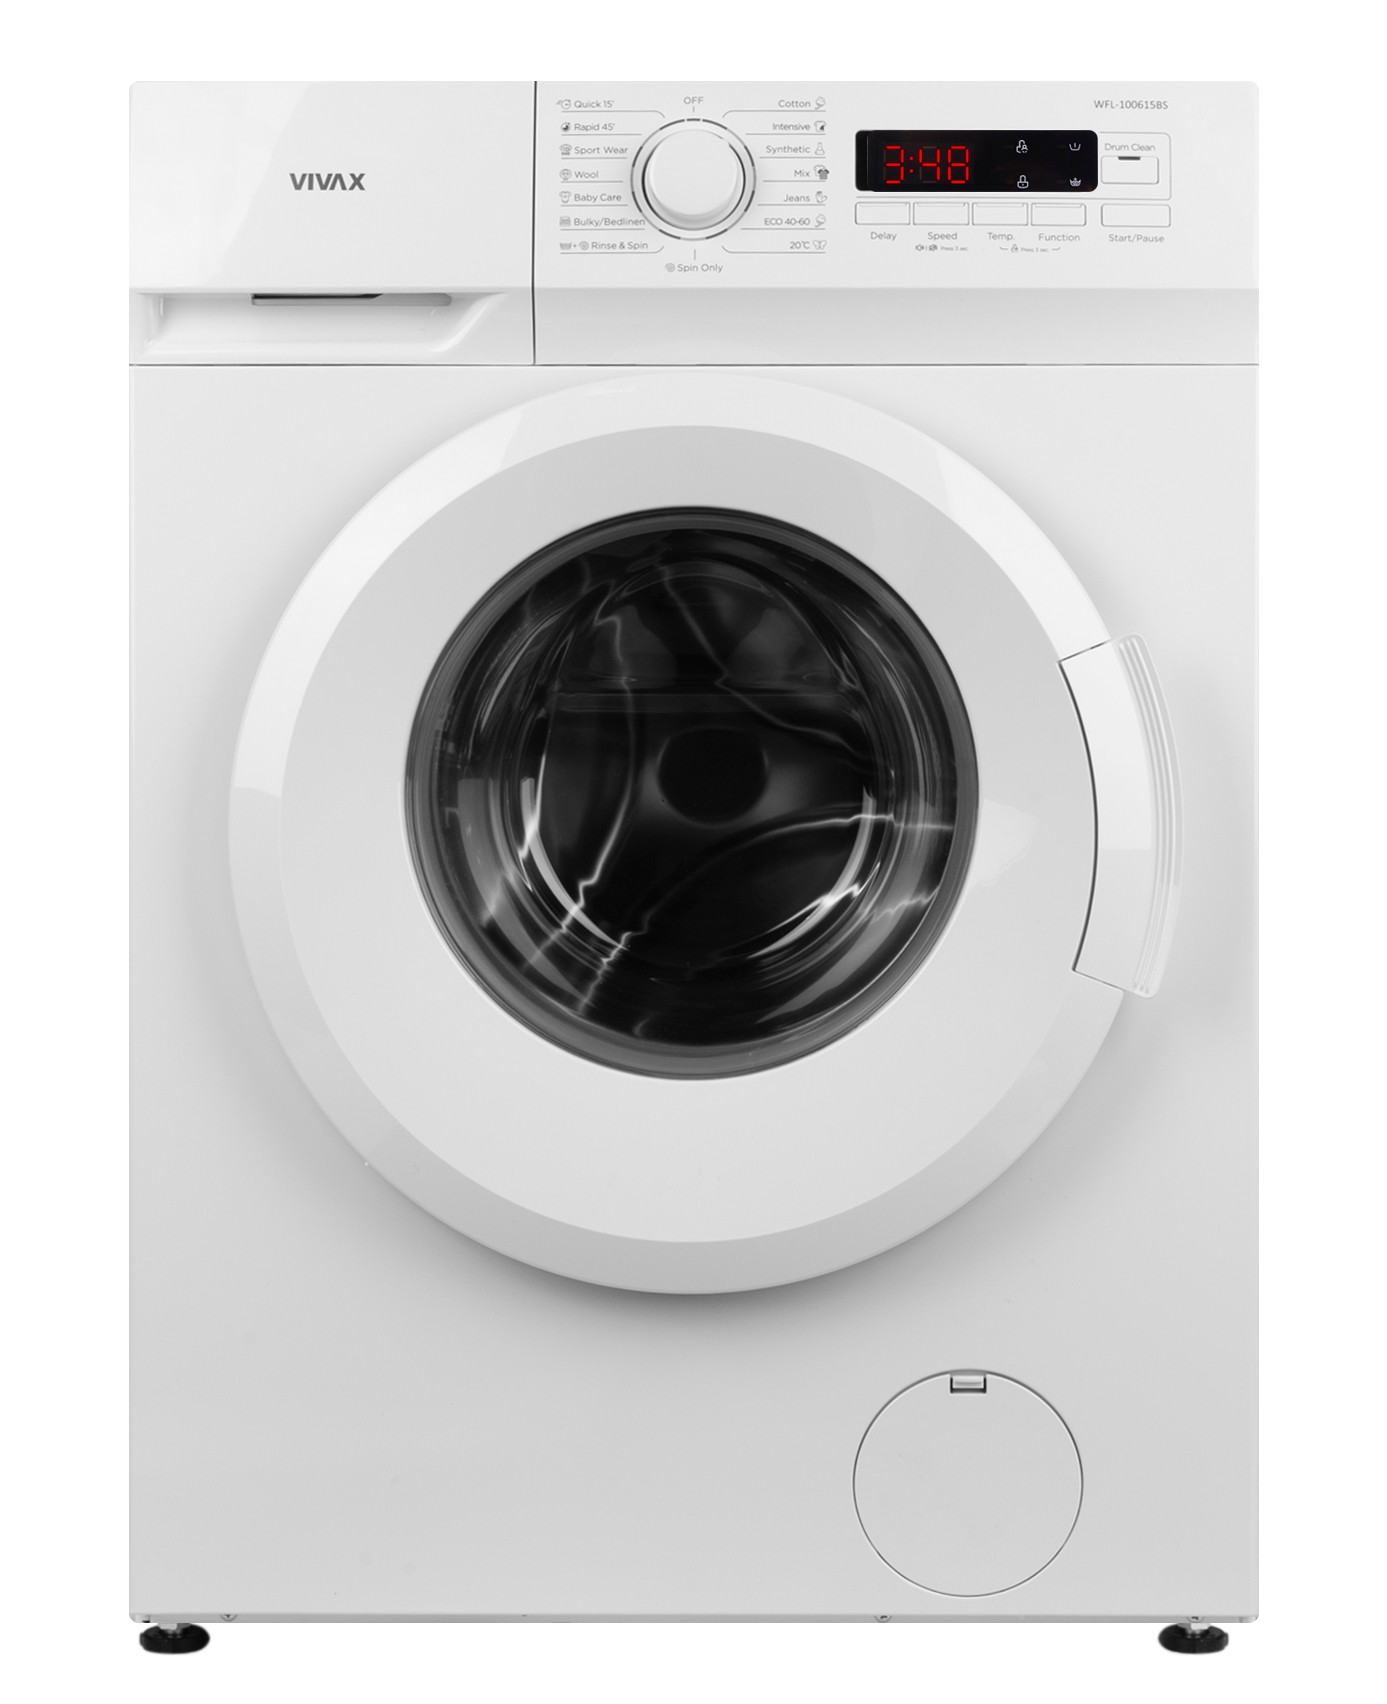 Ціна пральна машина Vivax WFL-100615BS в Києві